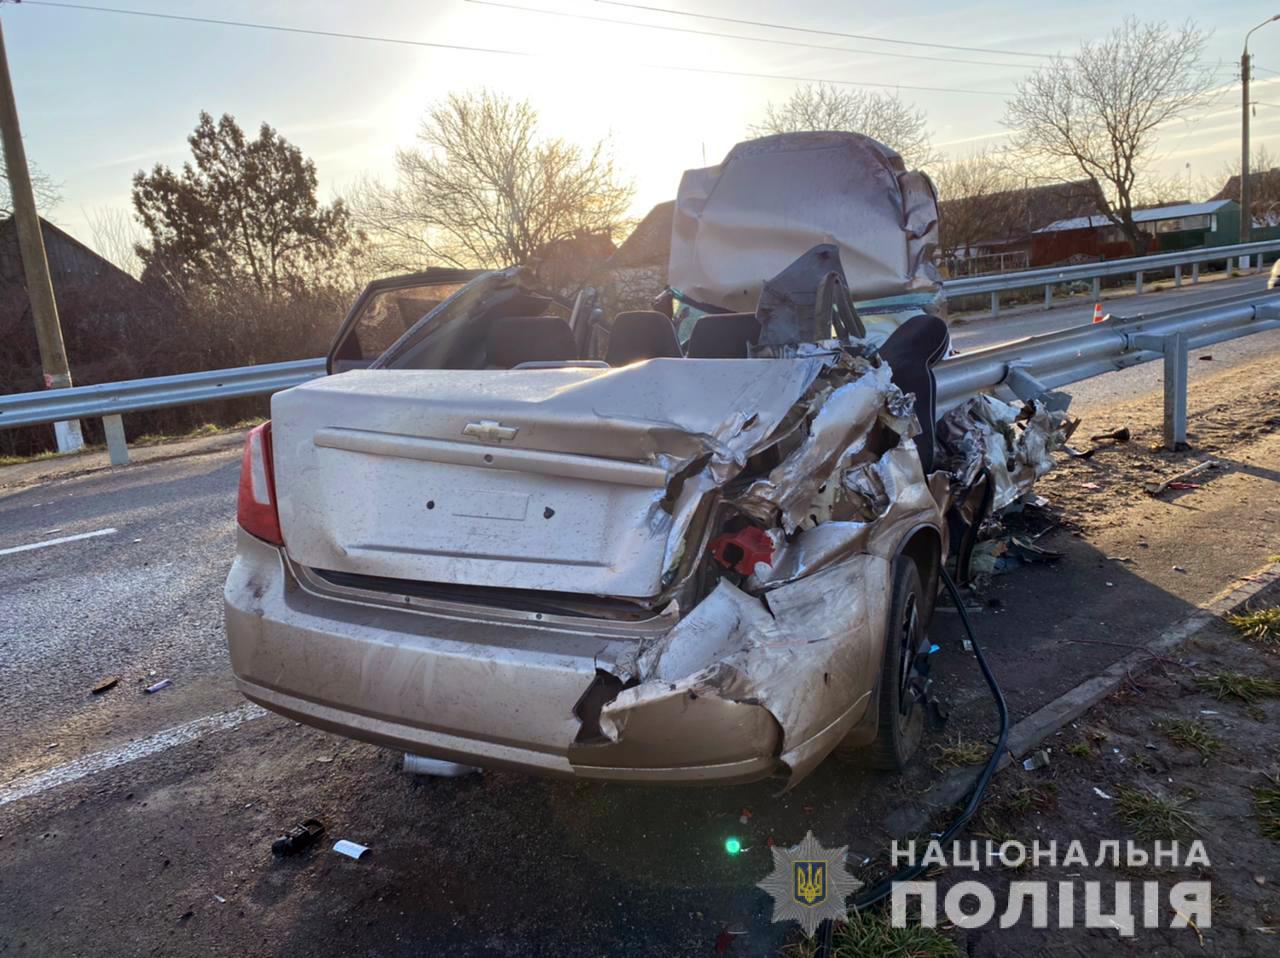 Девушка погибла на месте, машина всмятку: подробности жуткого ДТП в Запорожской области (ФОТО)